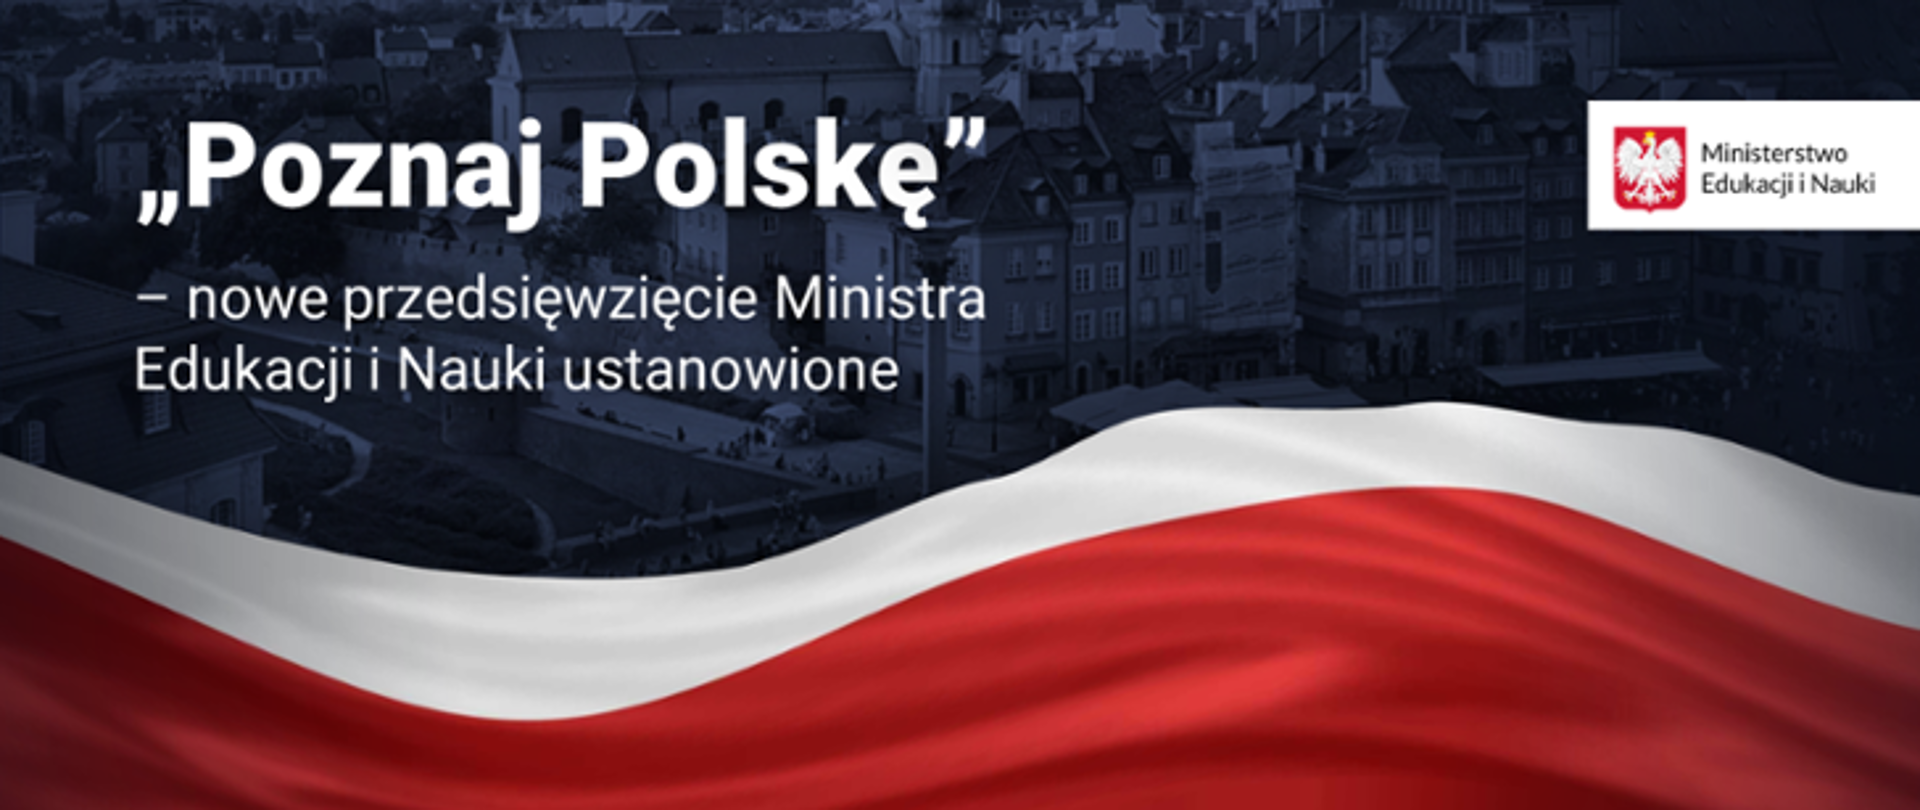 Plansza przedstawiająca plansze „Poznaj Polskę”. Na granatowym tle biało-czerwona flaga. 